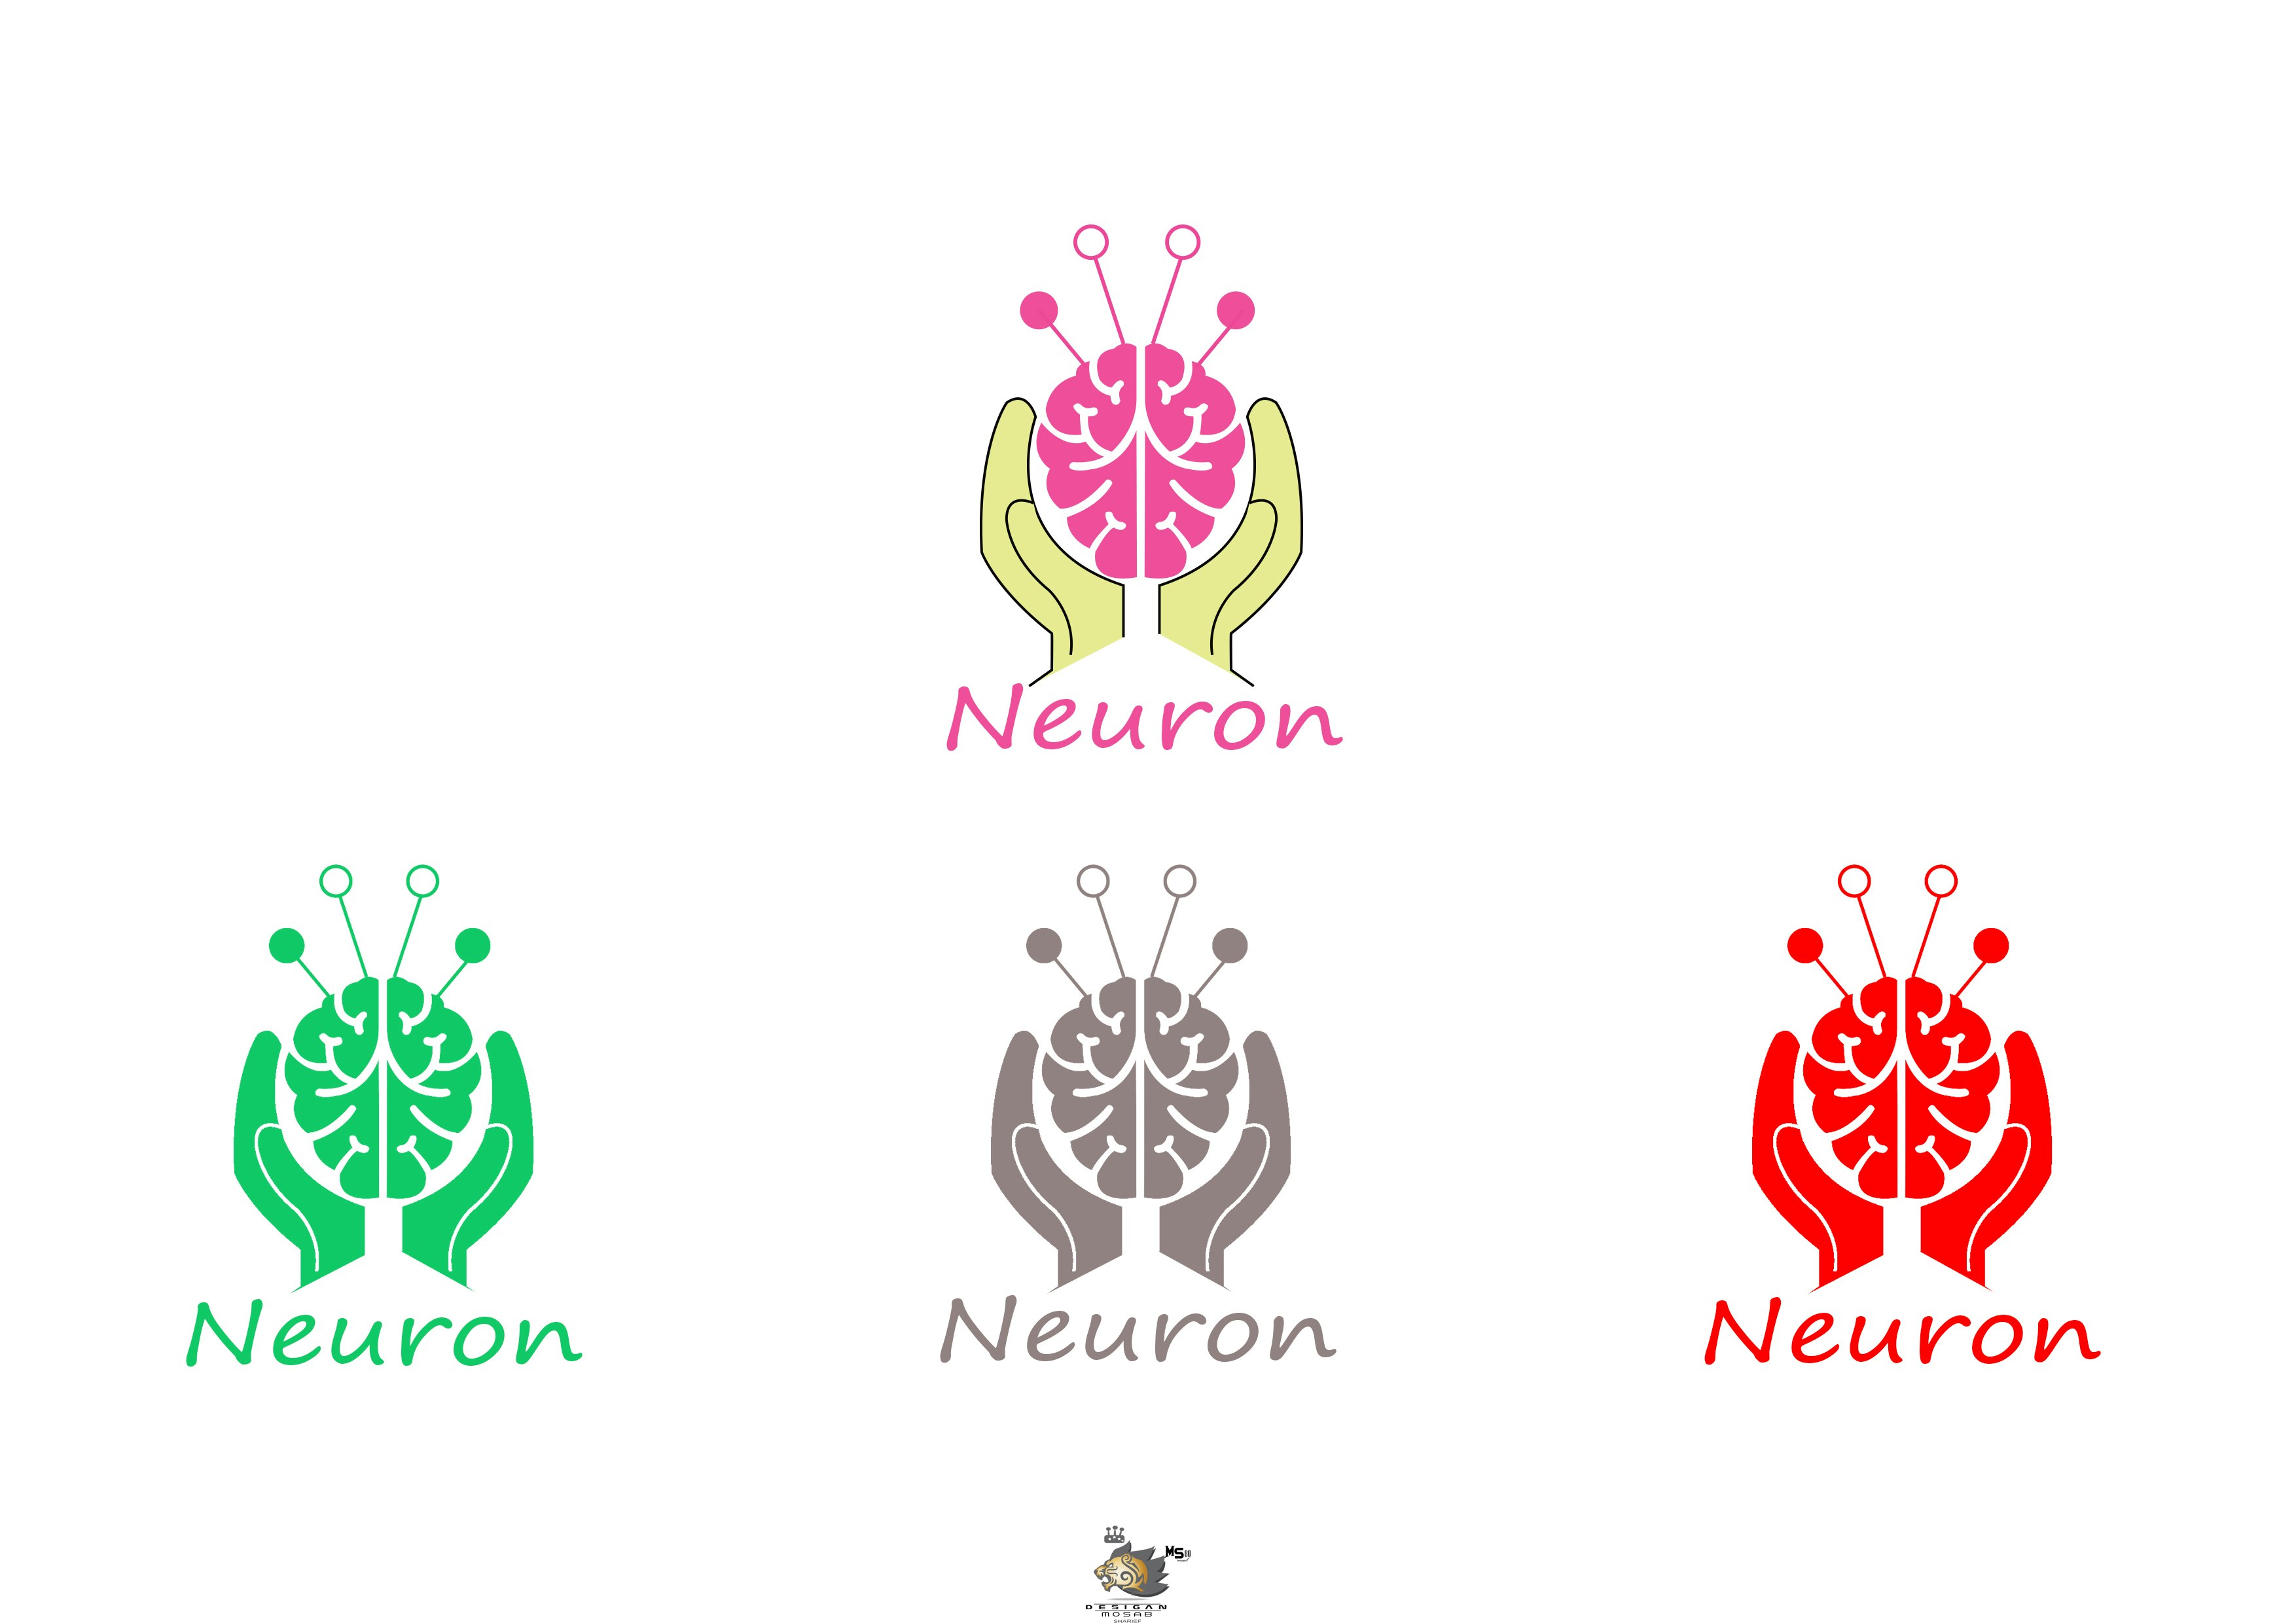 المطلوب شعار لصفحة اسمها Neuron وده اسم الخلية الع